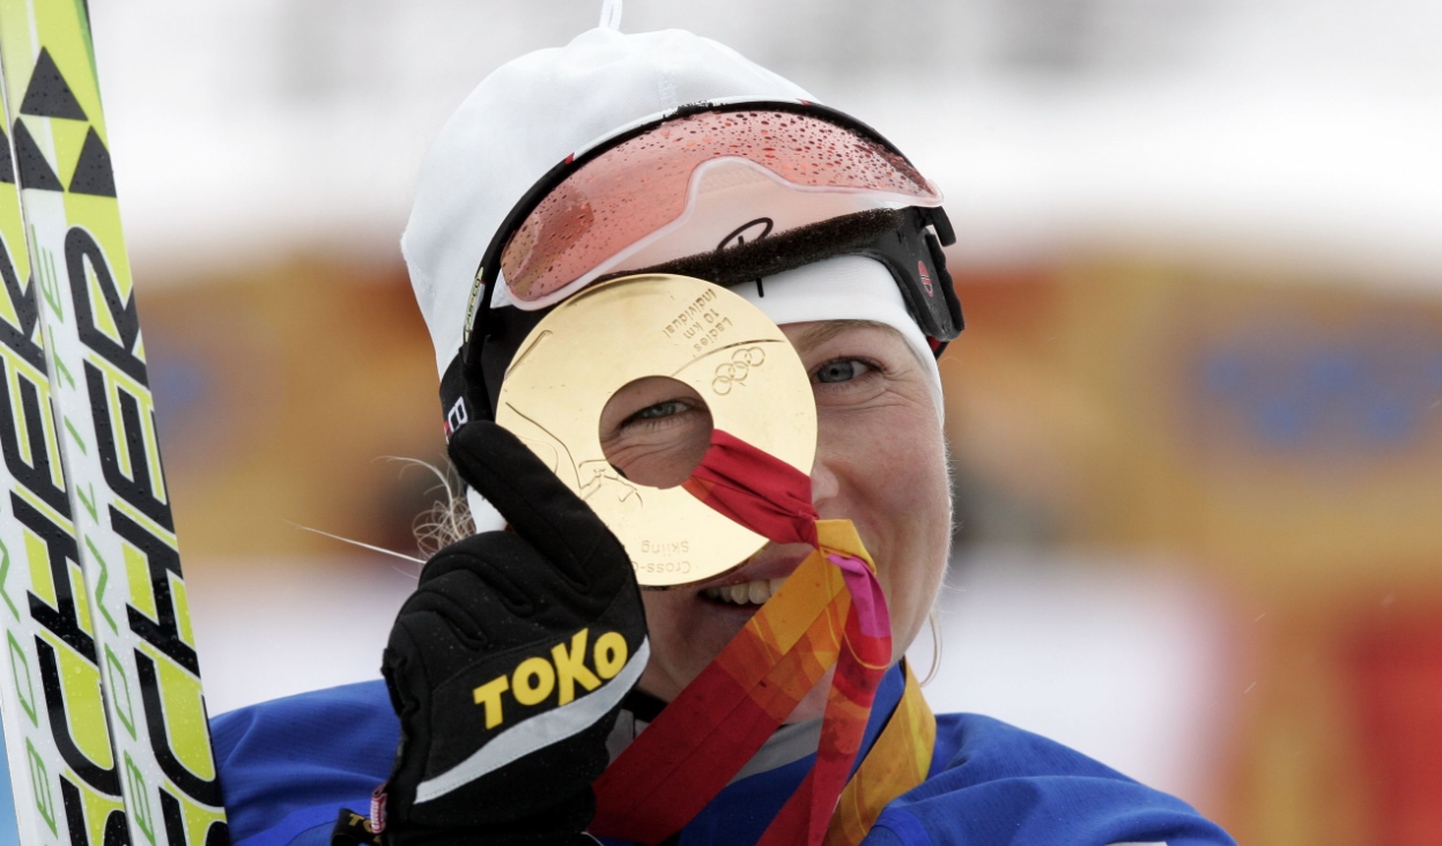 Olümpiavõitja Kristiina Šmigun-Vähi 2006. aasta Torino taliolümpiamängudel, kust tal õnnestus koju tuua lausa kaks kuldmedalit: 10 km klassikastiilis ja suusavahetusega sõidus.